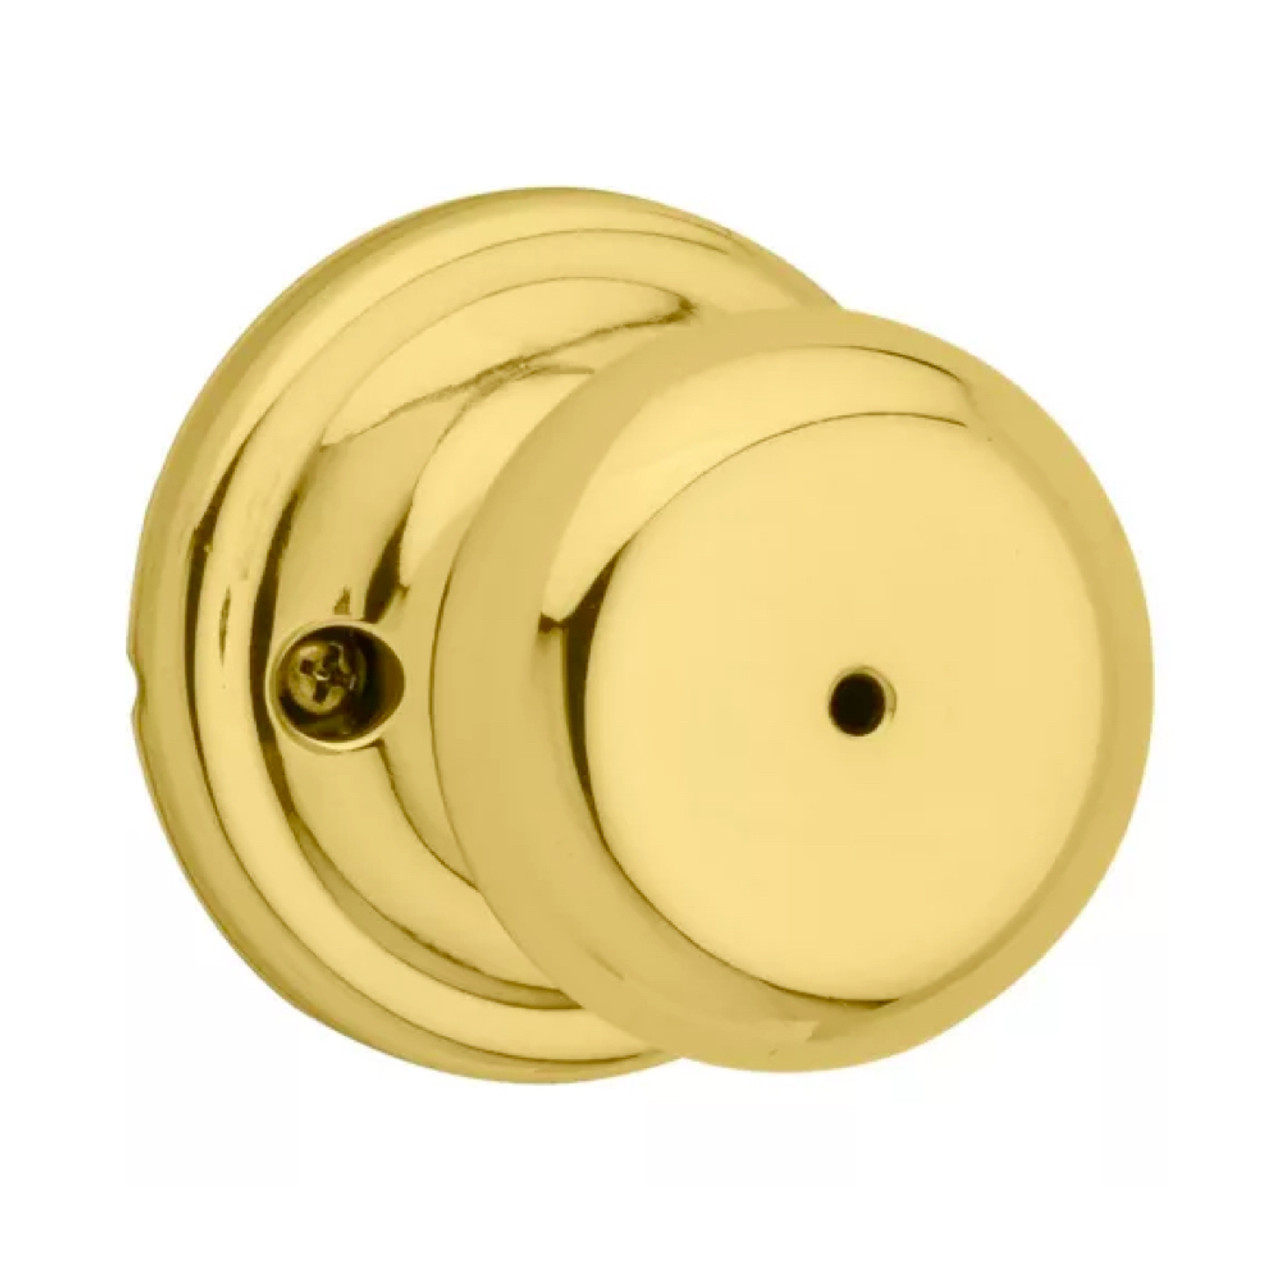 Kwikset CP730J Juno Knobset Reversible Door Lock for Bedrooms, Bathrooms